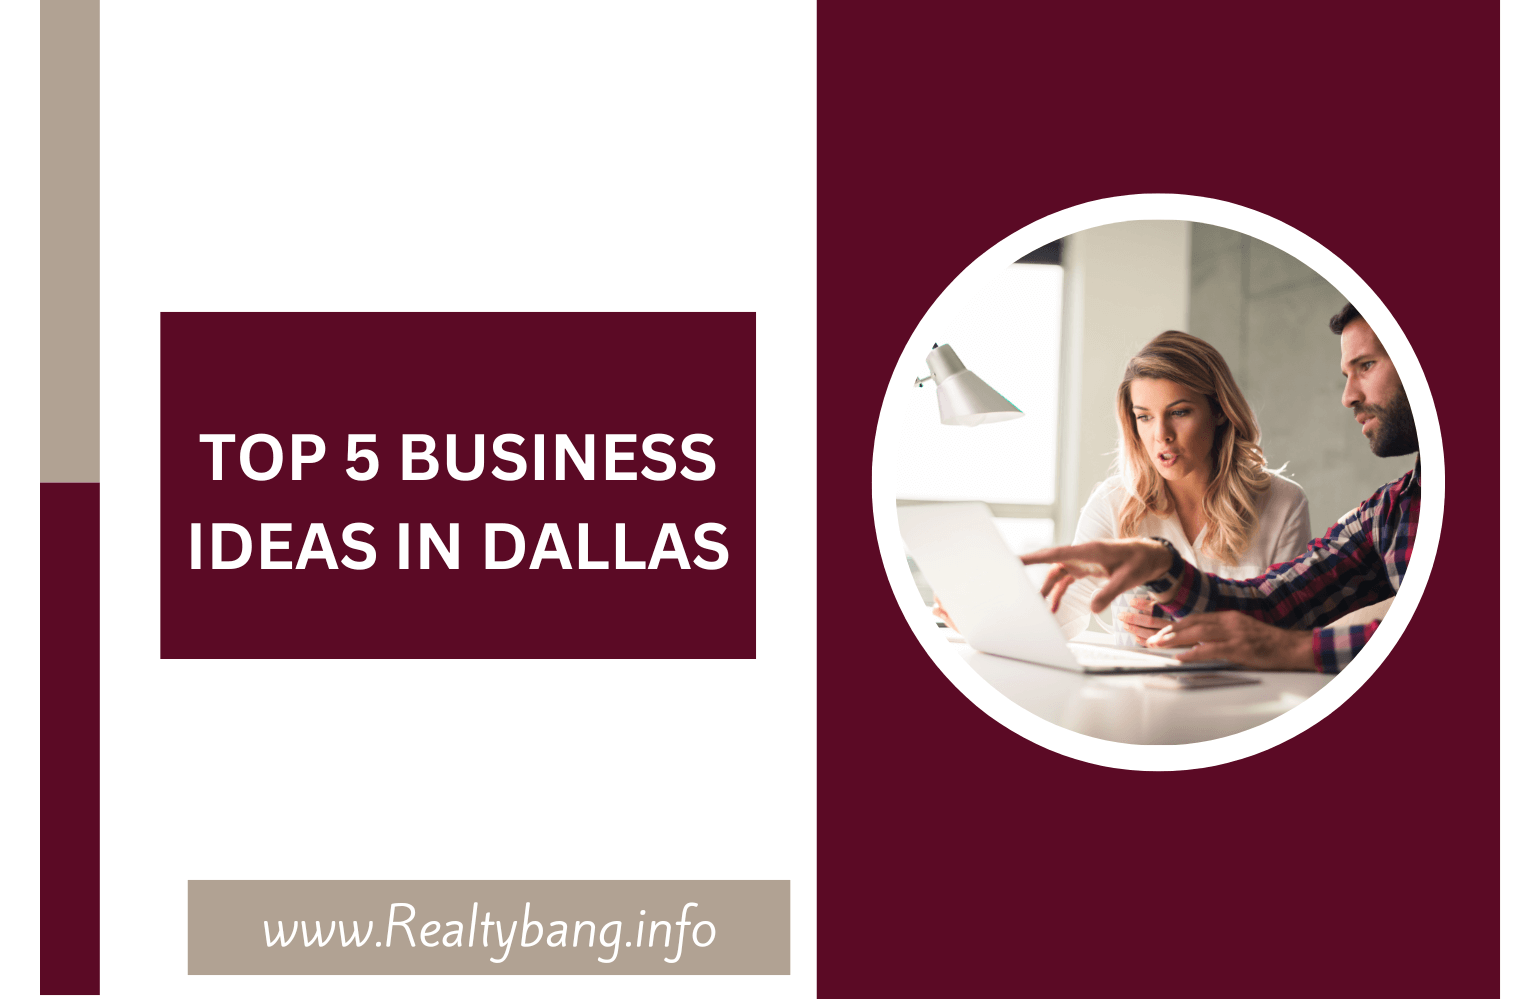 TOP 5 BUSINESS IDEAS IN DALLAS